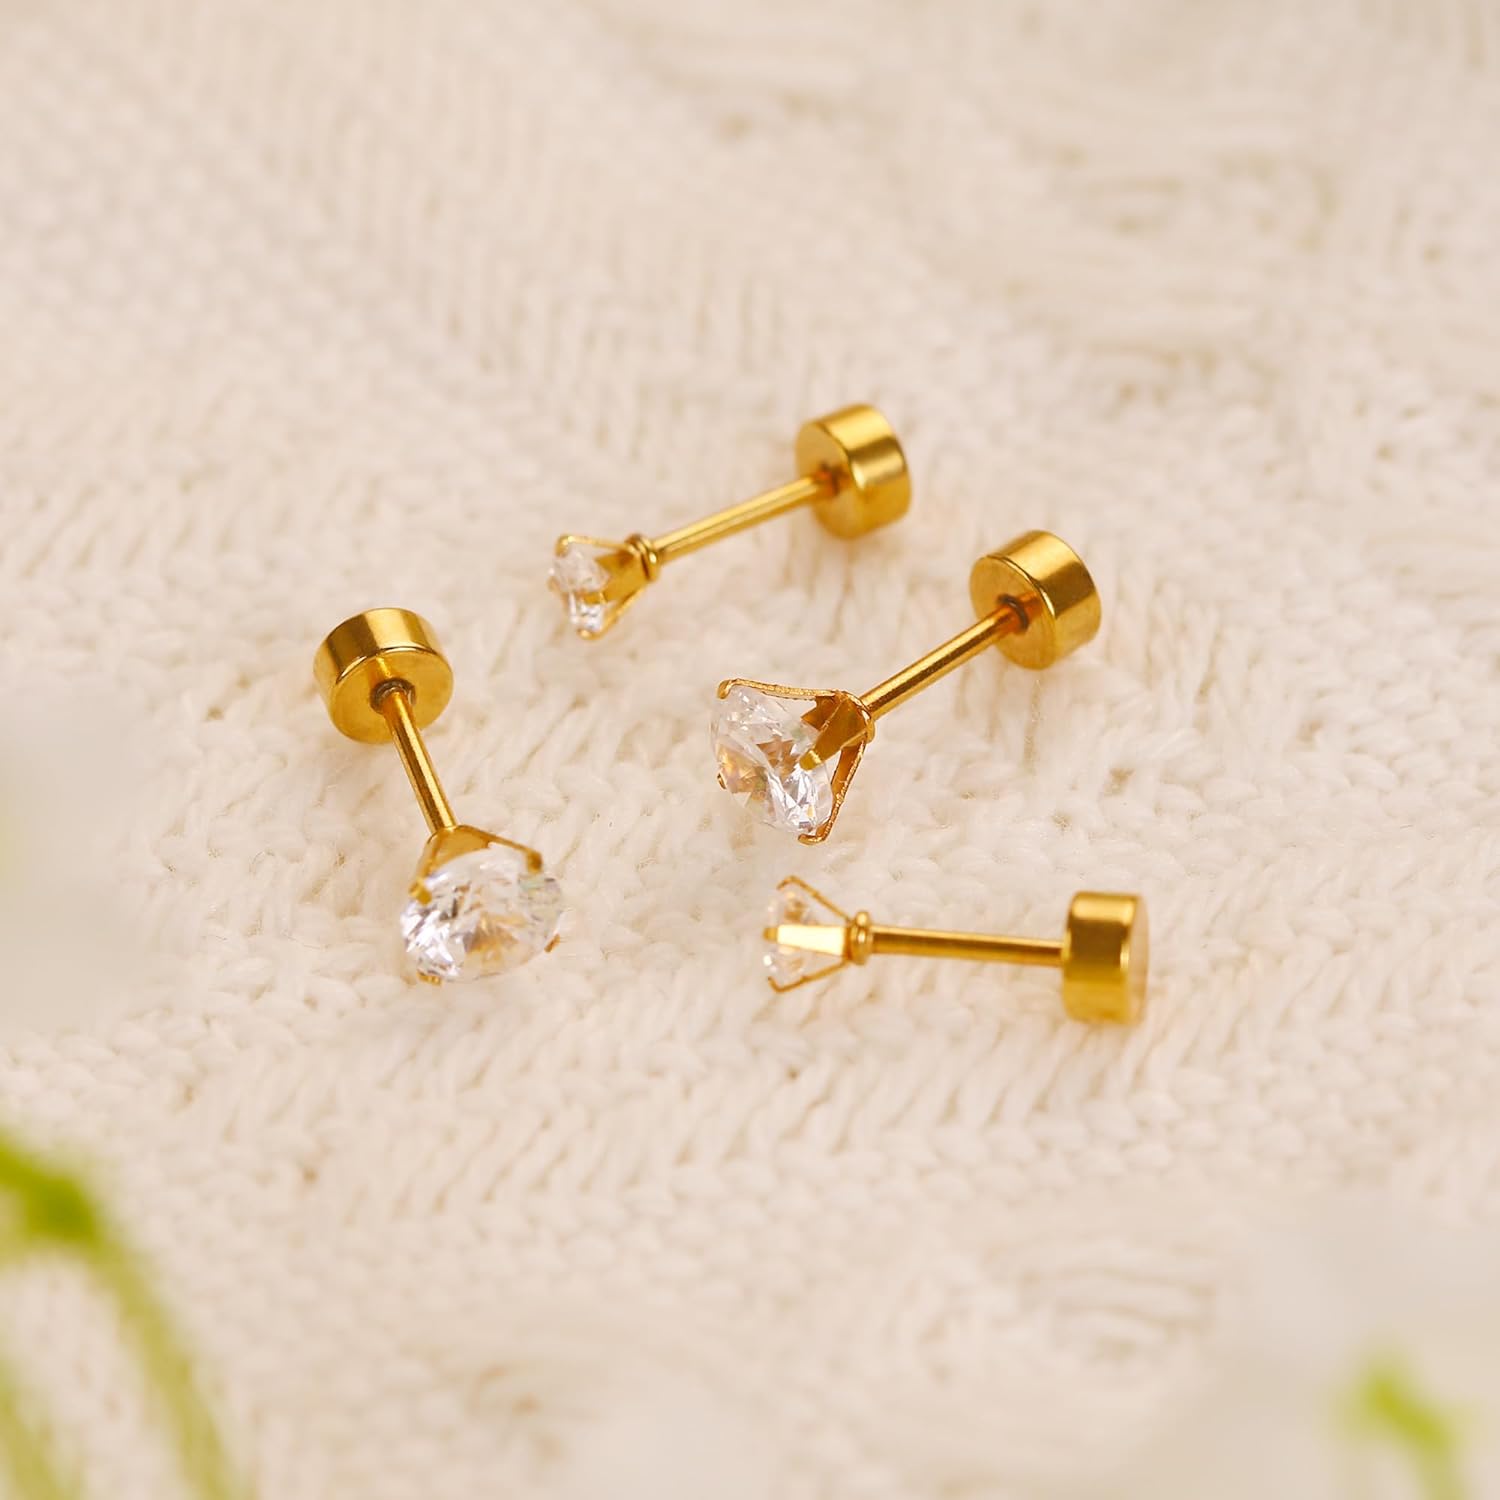 Smilebelle 2 Pairs Gold Flat Back Earrings, 14k Screw Back Earrings Gold Cartilage Gold Stud Earrings Hypoallergenic Tragus Earrings for Women Girls Nap Sleeper Earrings Valentines Gift (3mm+5mm CZ)